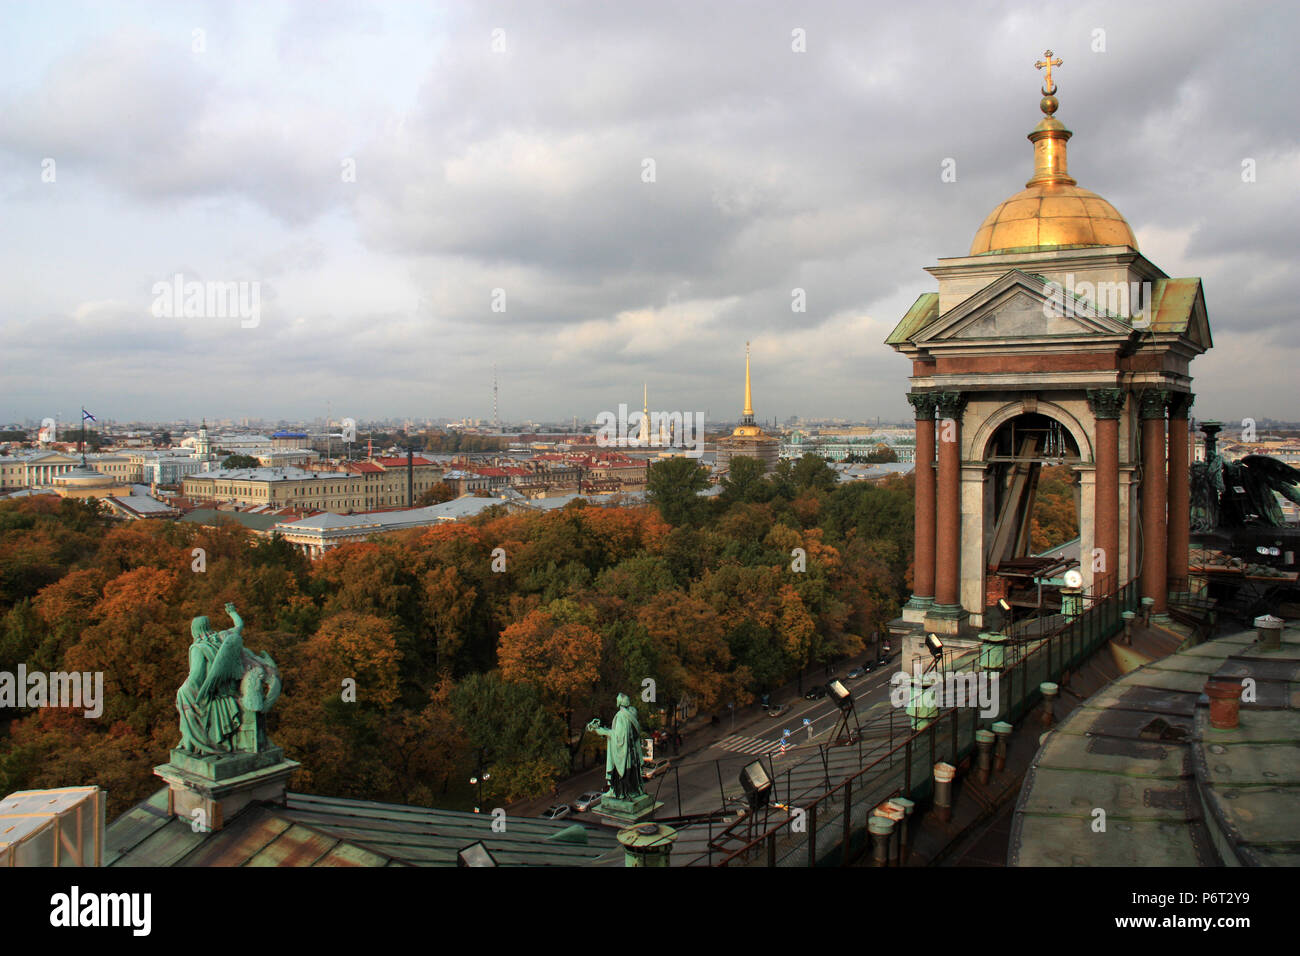 La ville, les quais de la rivière Neva et la forteresse Pierre et Paul - vu de la cathédrale Saint-Isaac à Saint-Pétersbourg, Russie Banque D'Images